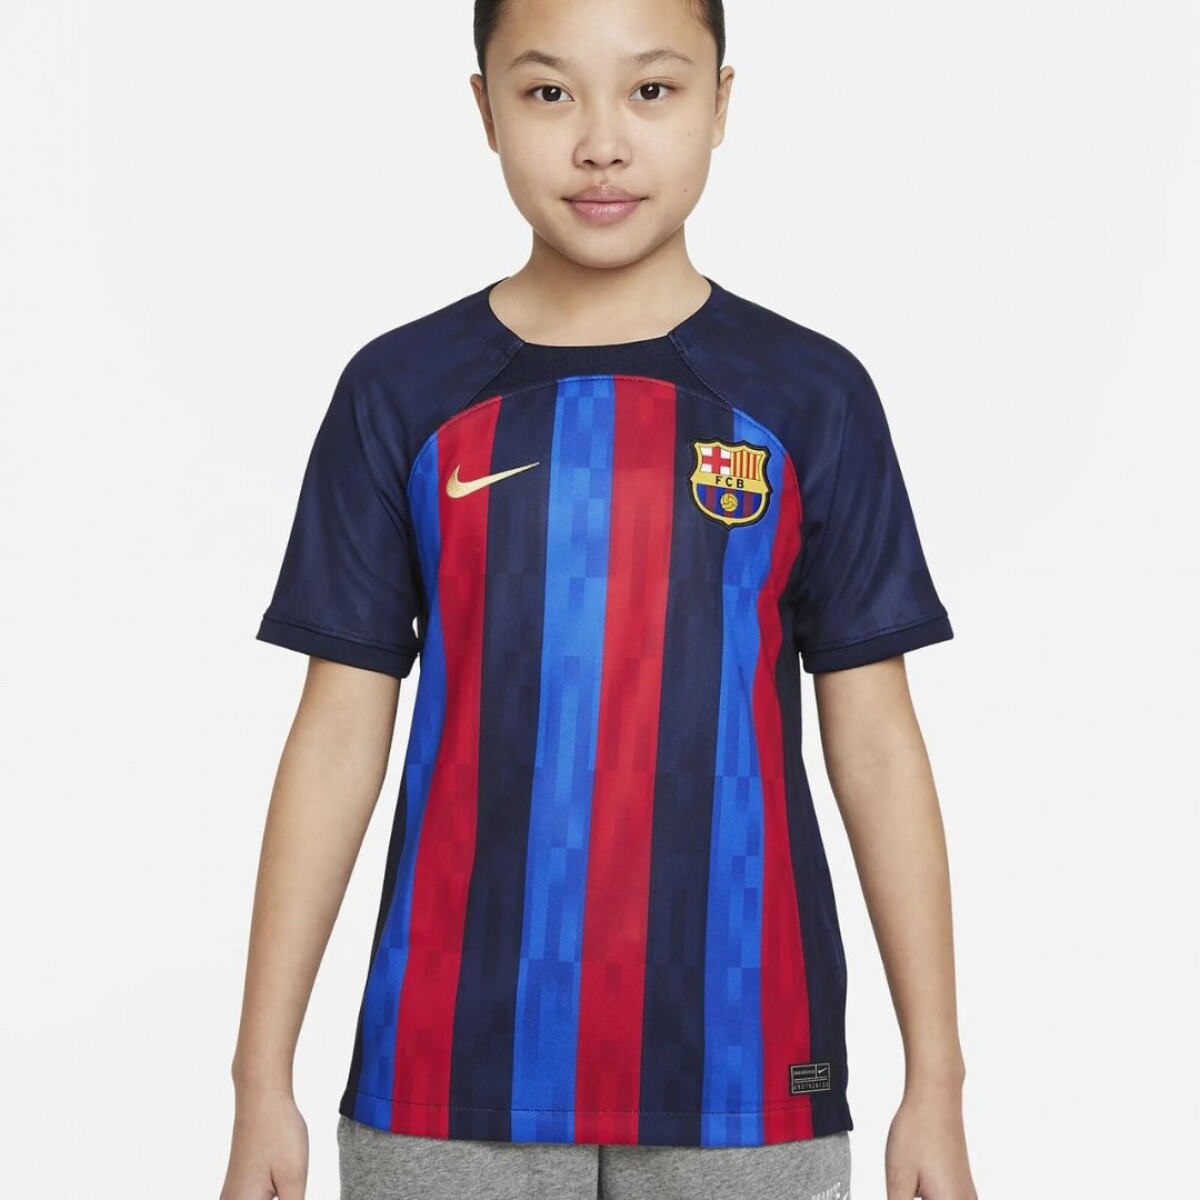 Camiseta Nike Futbol FCB Niño y Df Stad Jsy Ss Obsidian - S/C 